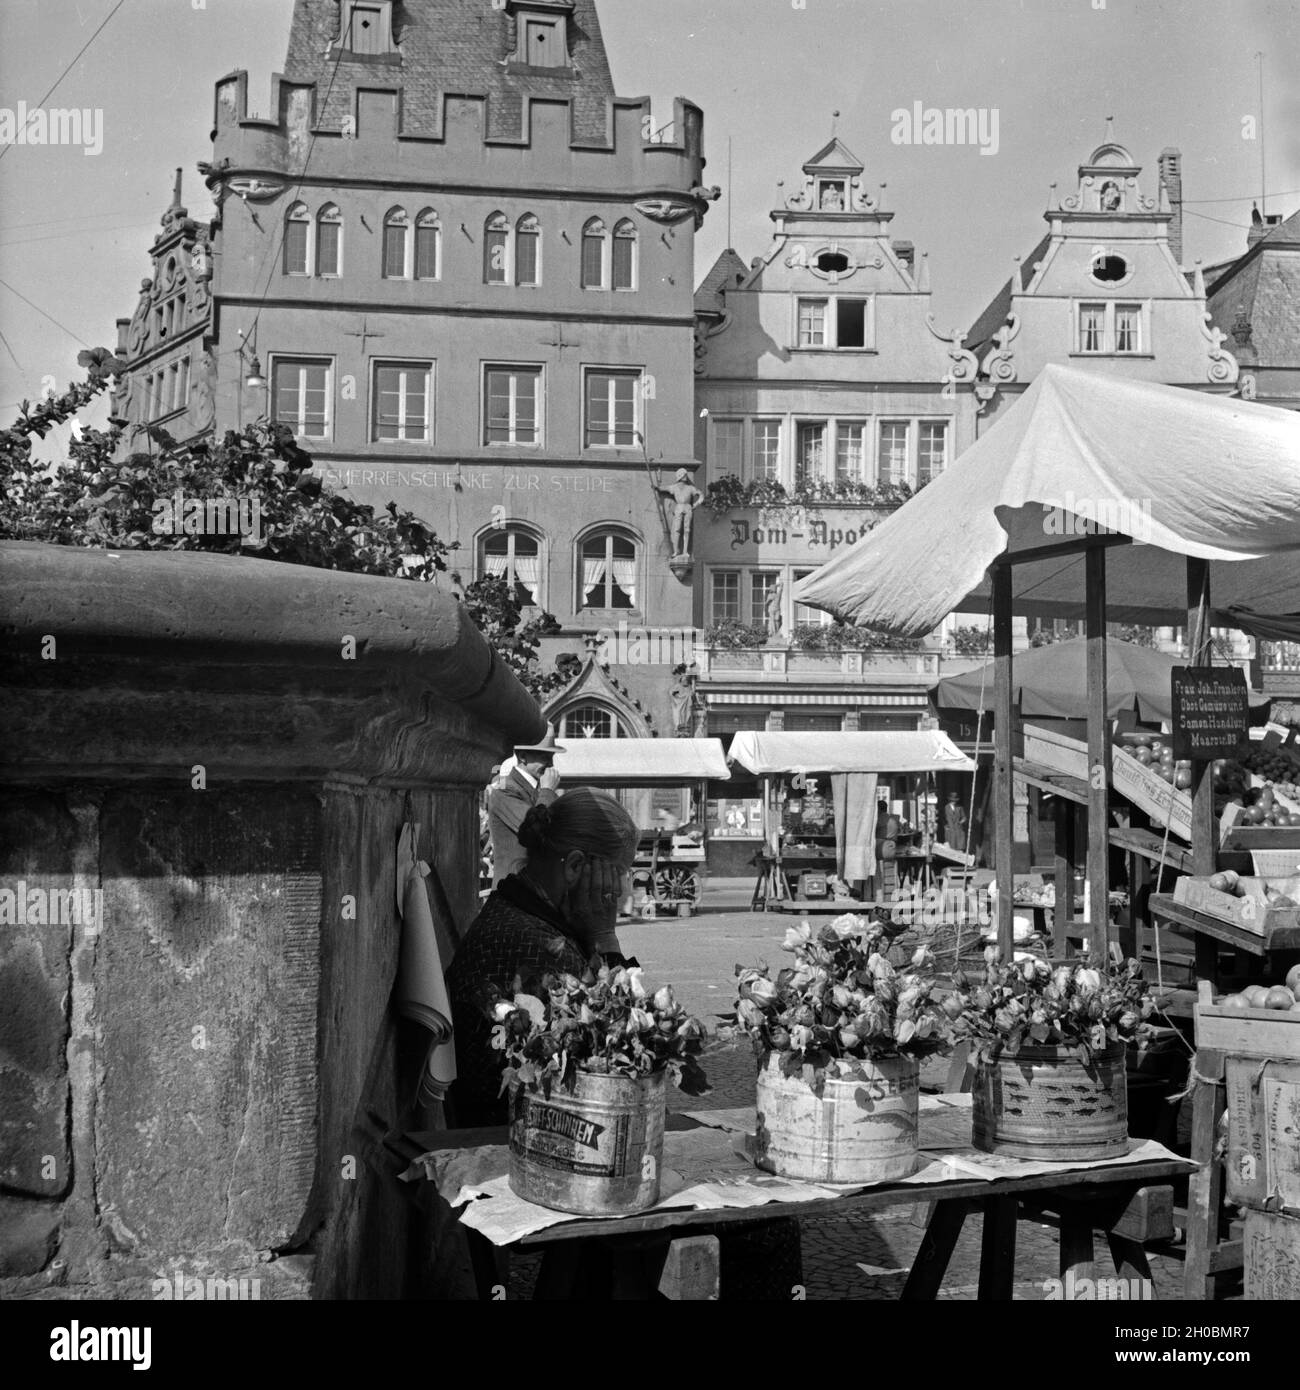 Die Ratsherrenschenke zur Steipe und die Dom Apotheke auf dem Marktplatz a Treviri, Deutschland 1930er Jahre. Inn 'Ratsherrenschenke' e una farmacia al mercato principale di Trier, Germania 1930s. Foto Stock